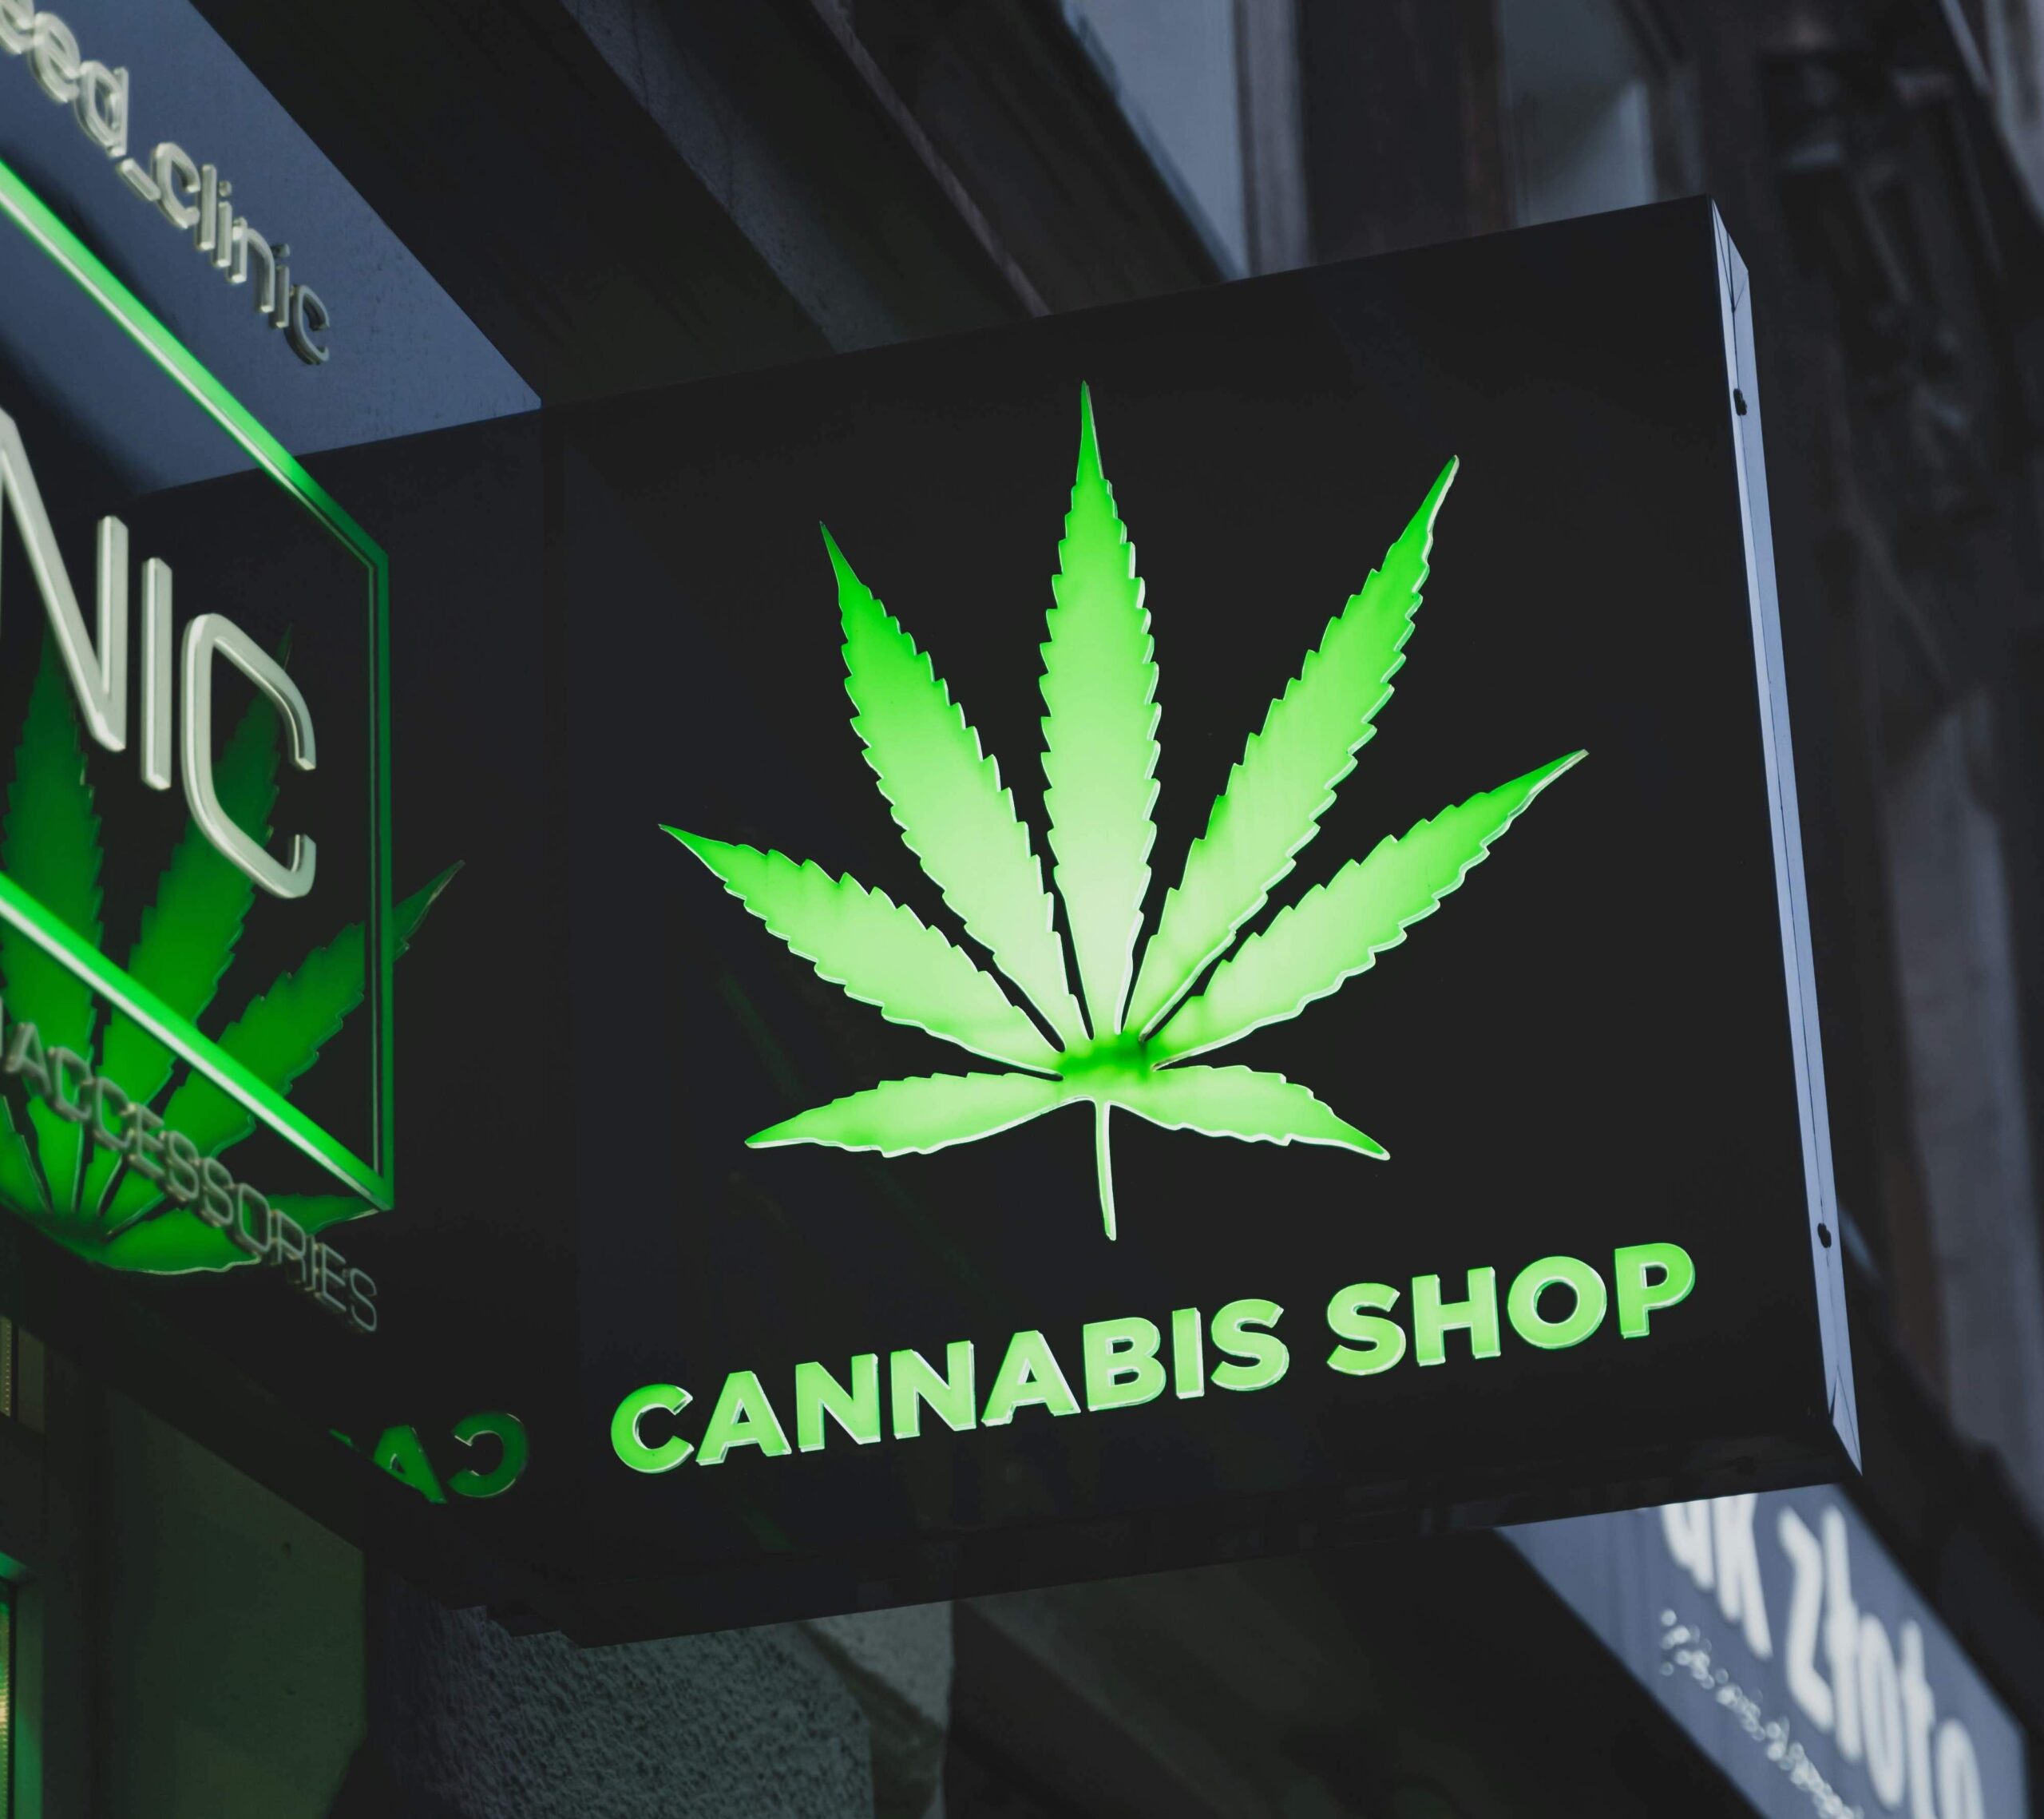 Verso la chiusura dei negozi di cannabis “light”. Anche a Verona